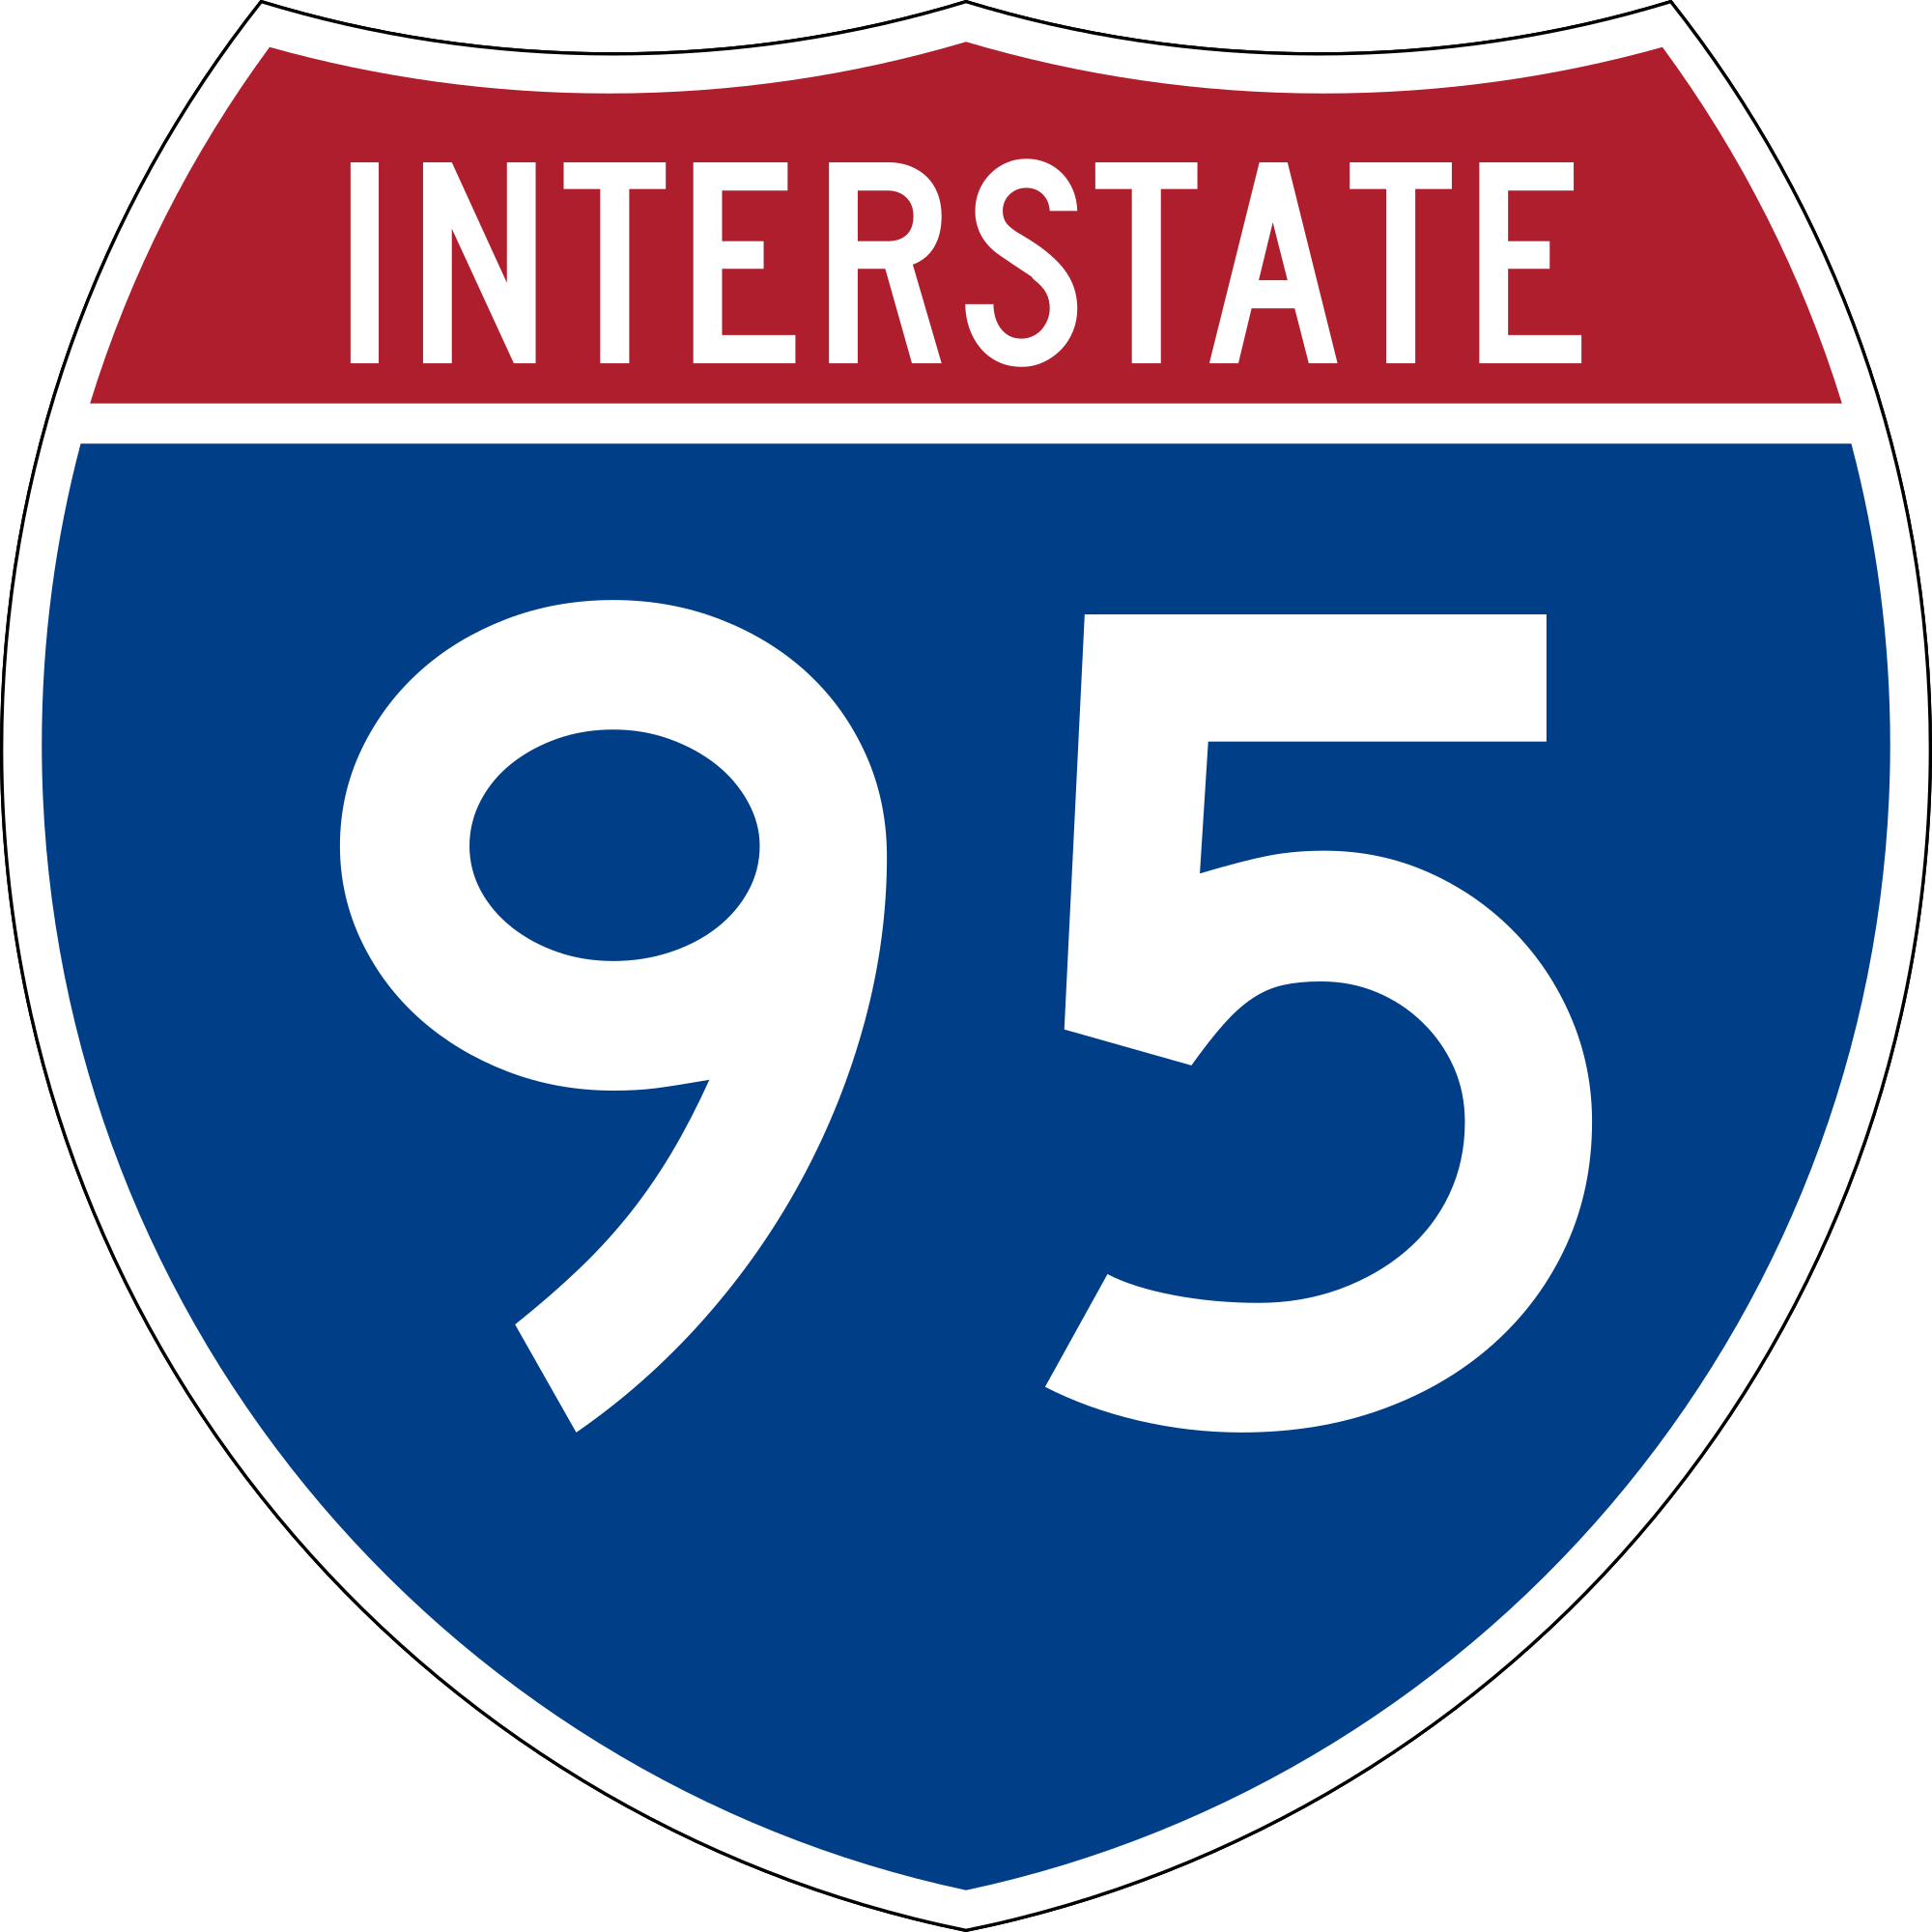 Interstate Logo - I 95.svg